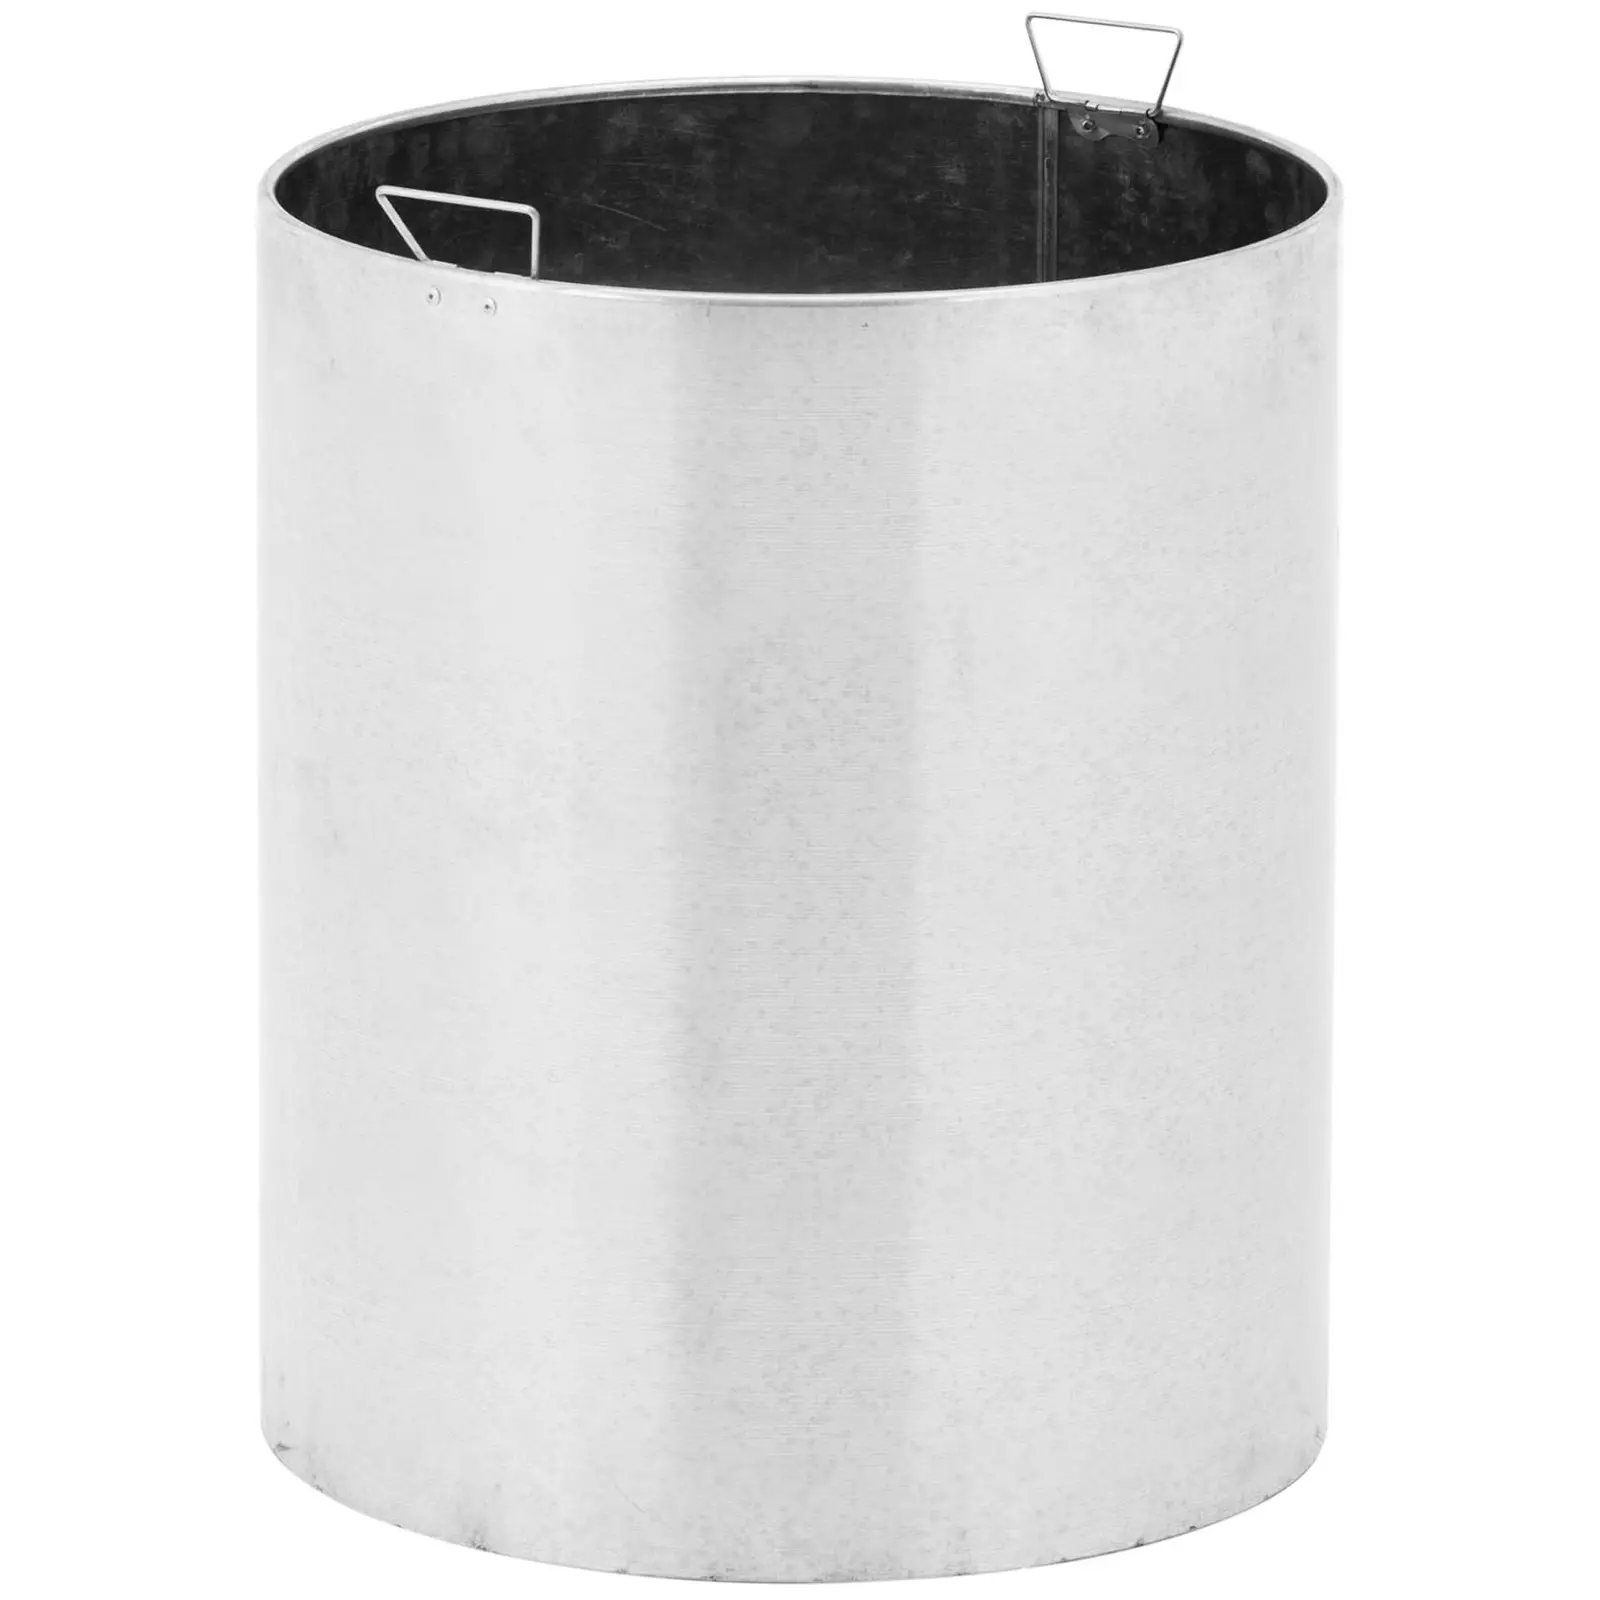 Avfallskorg - rund - med tak - rostfritt stål / galvaniserat stål - silver